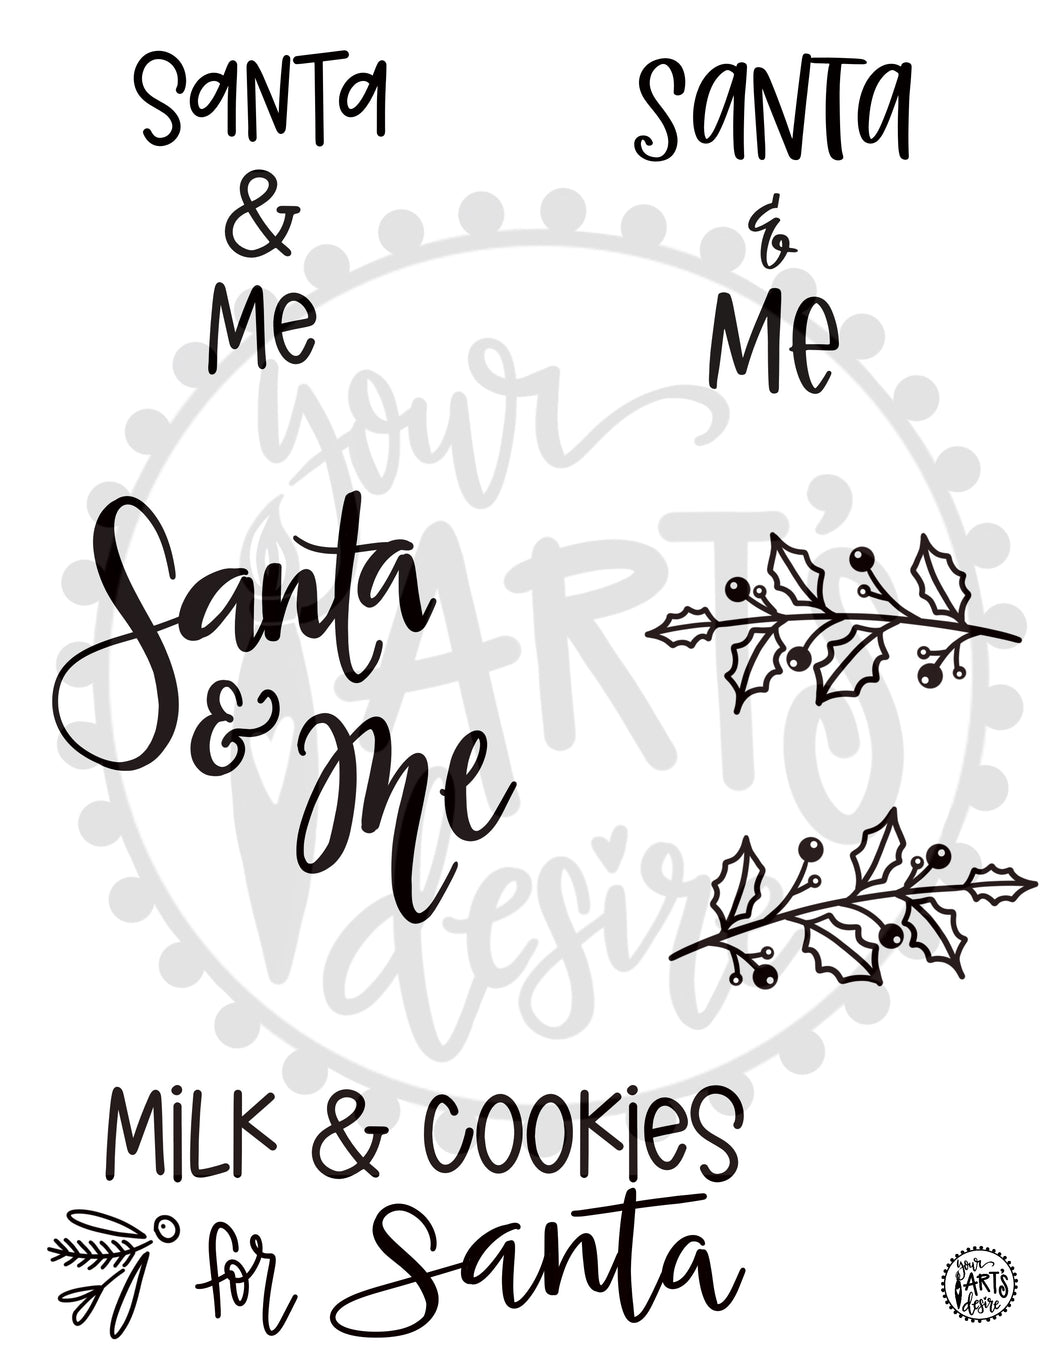 Santa & Me & Cookies